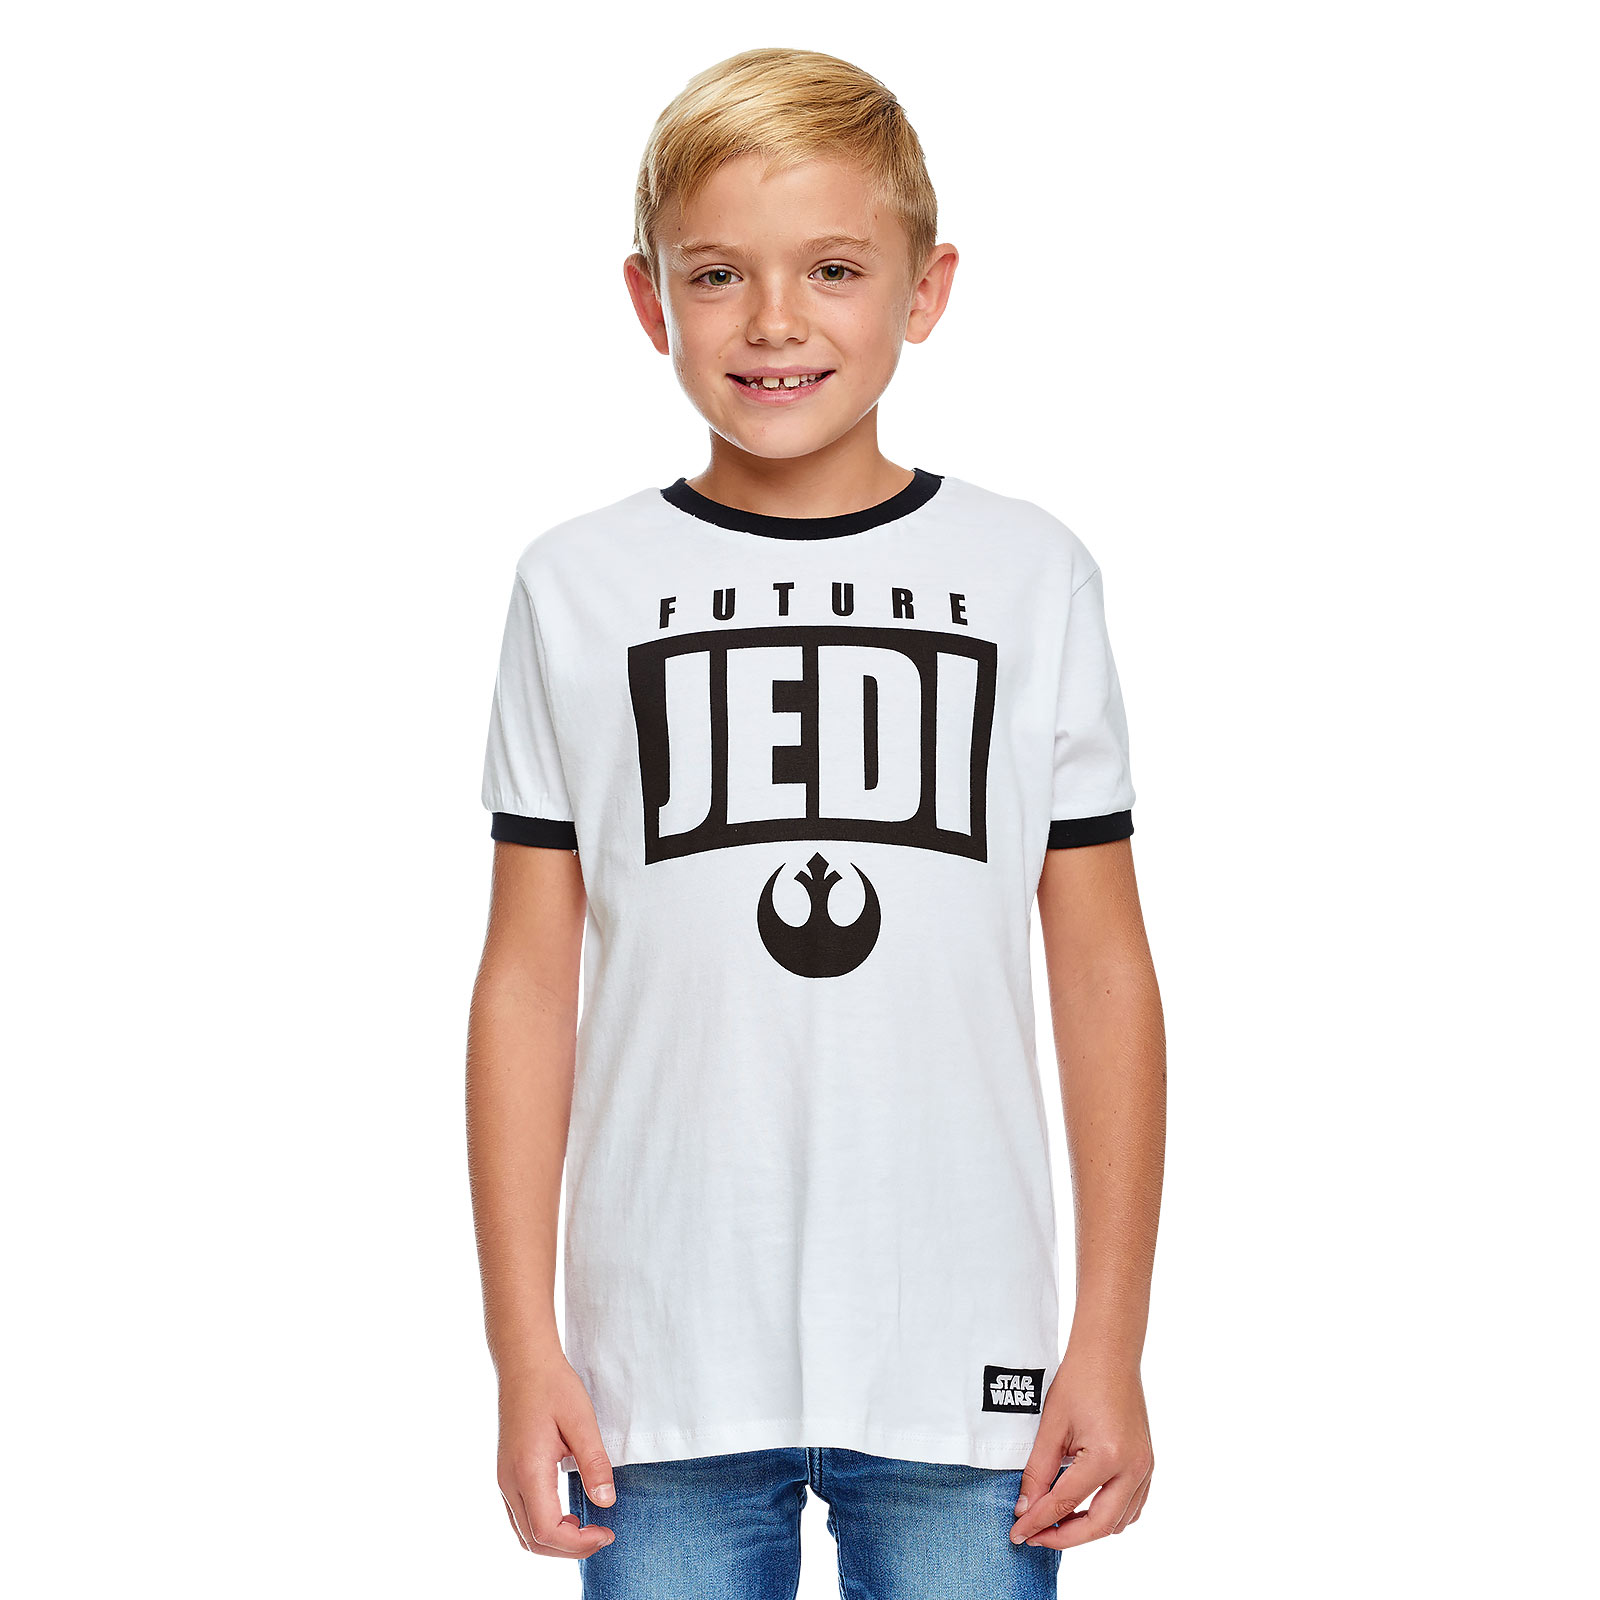 Star Wars - Future Jedi Kinder T-shirt Wit